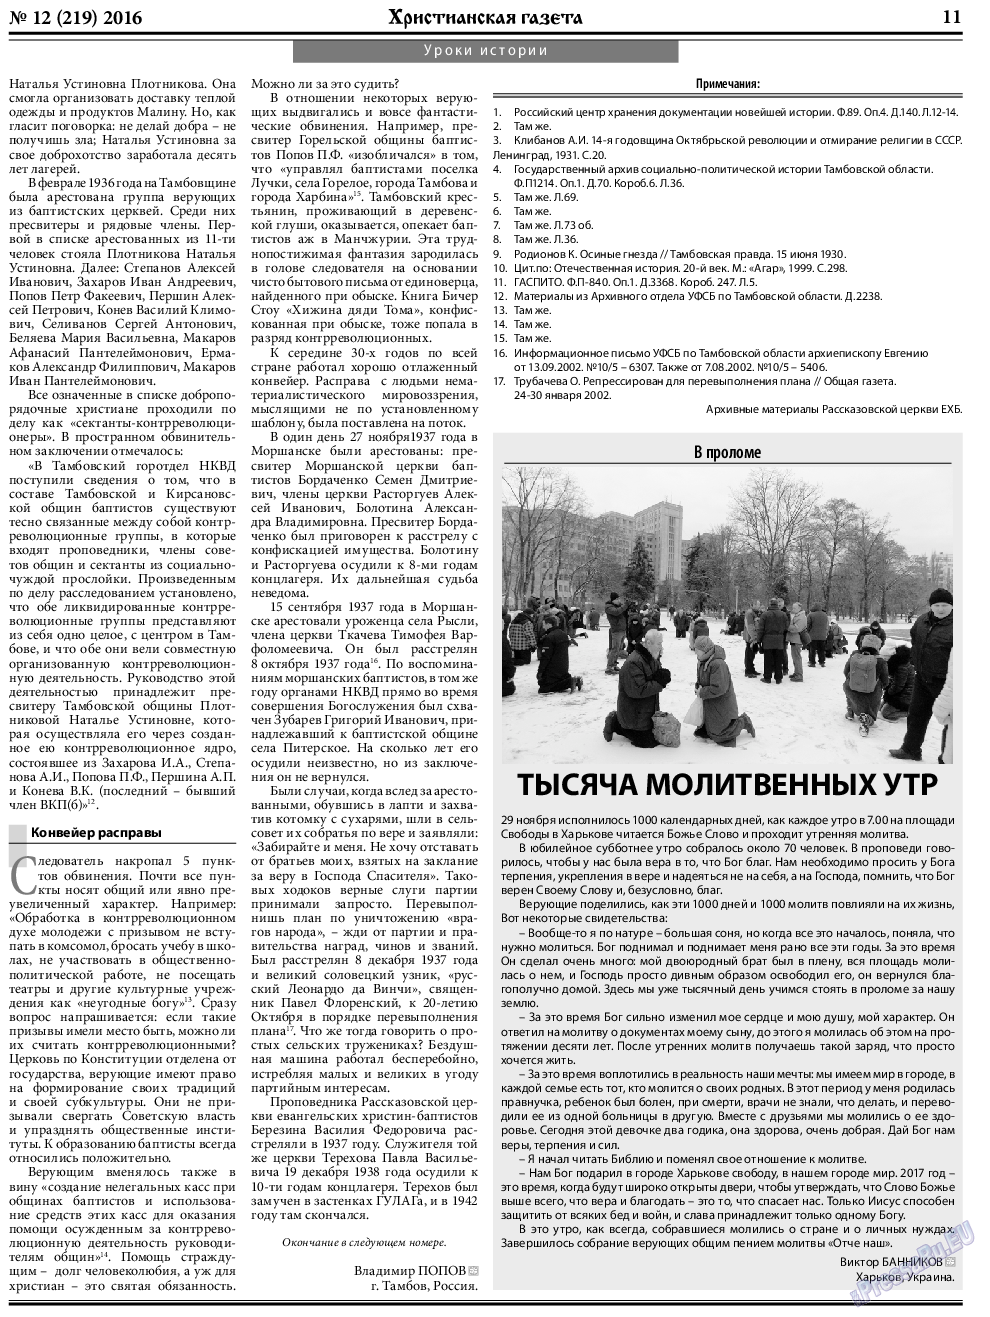 Христианская газета, газета. 2016 №12 стр.11